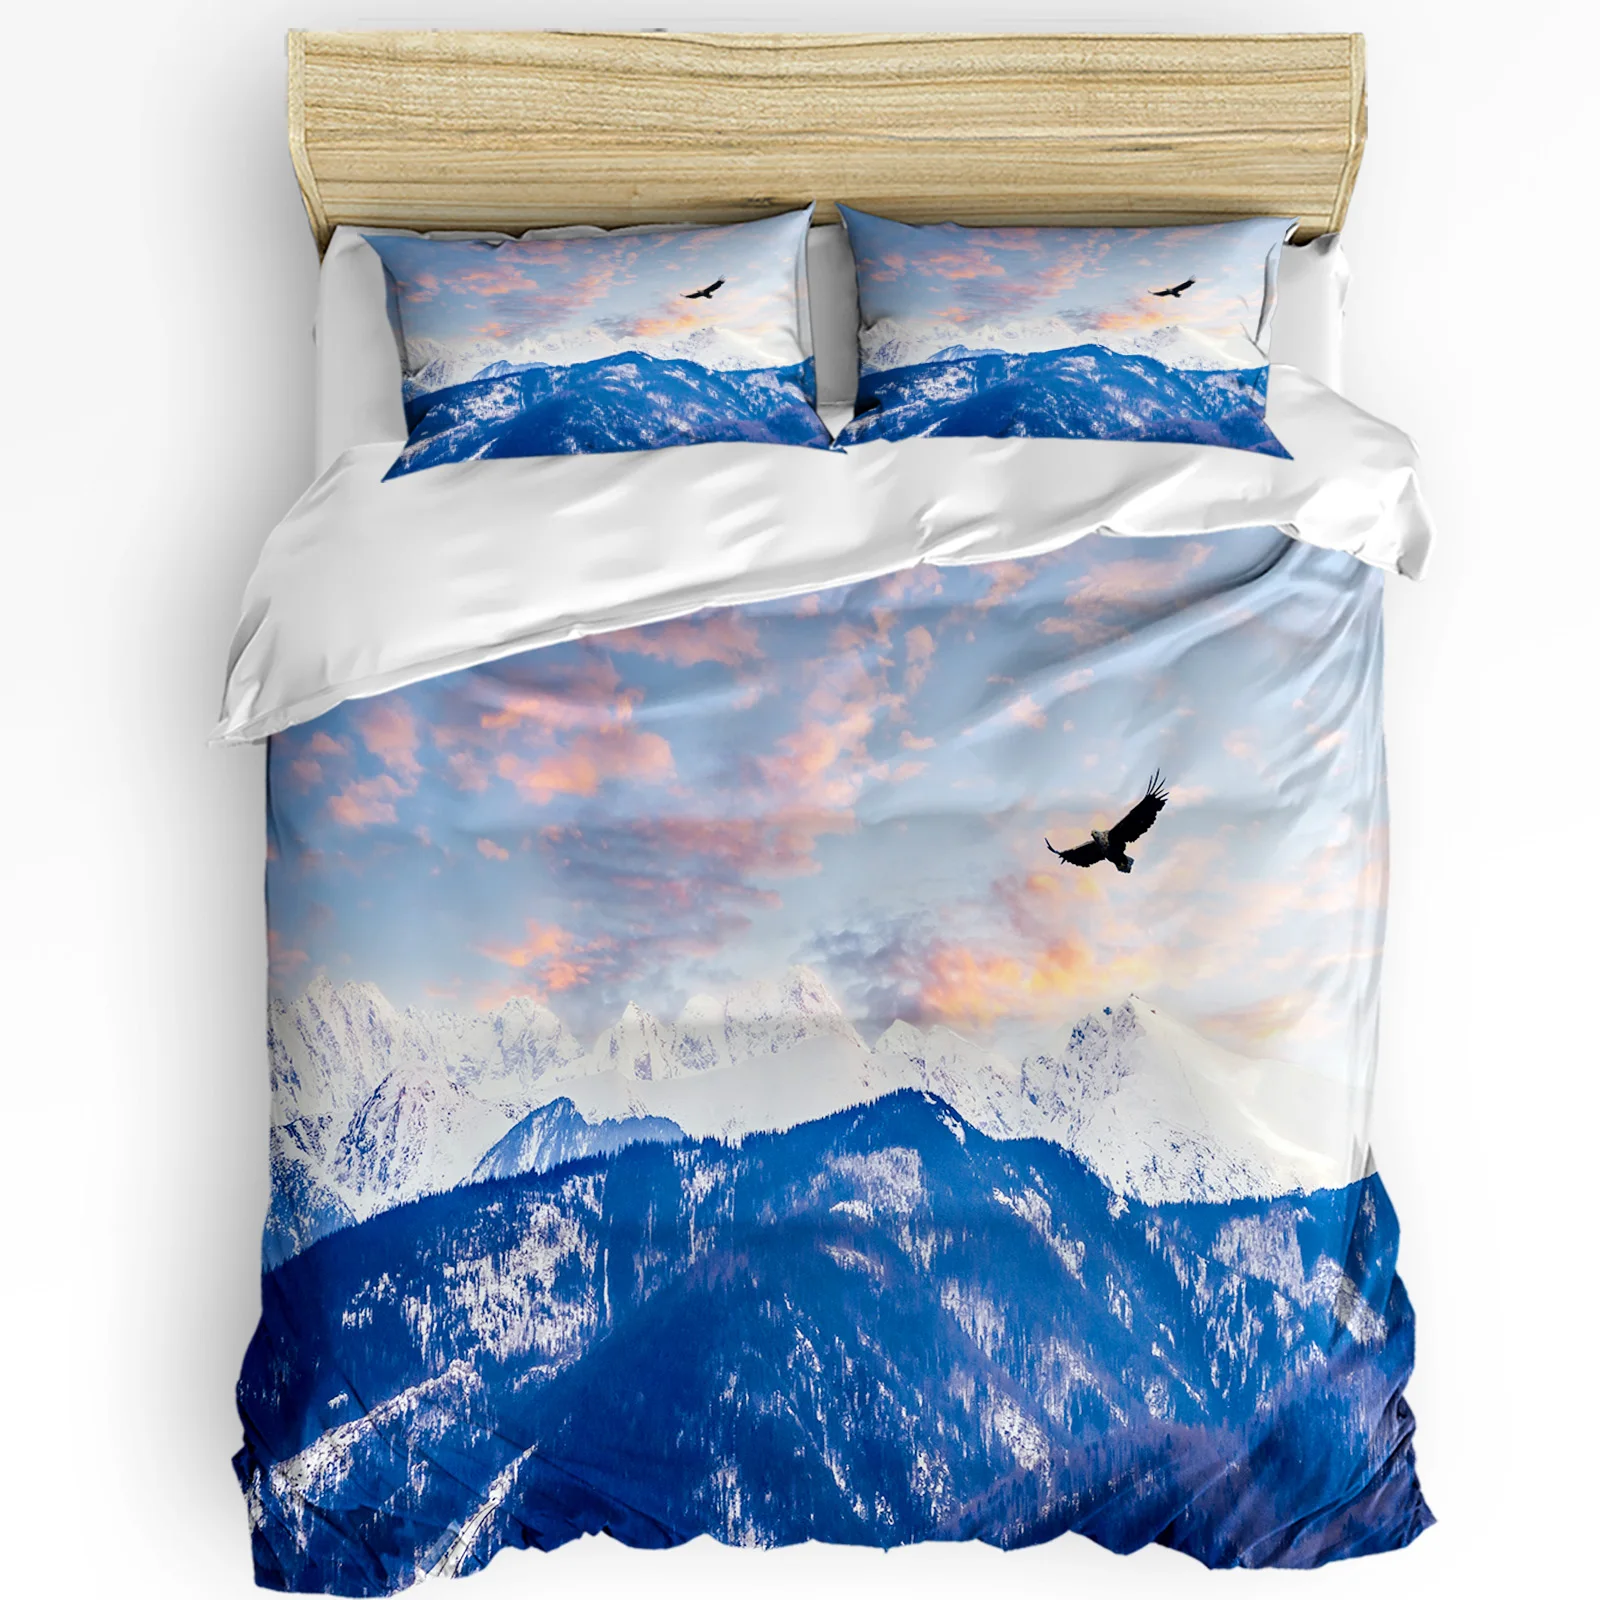 3pcs Bedding Set Eagle Snow Mountain Home Textile Duvet Cover Pillow Case Boy Kid Teen Girl Bedding Covers Set